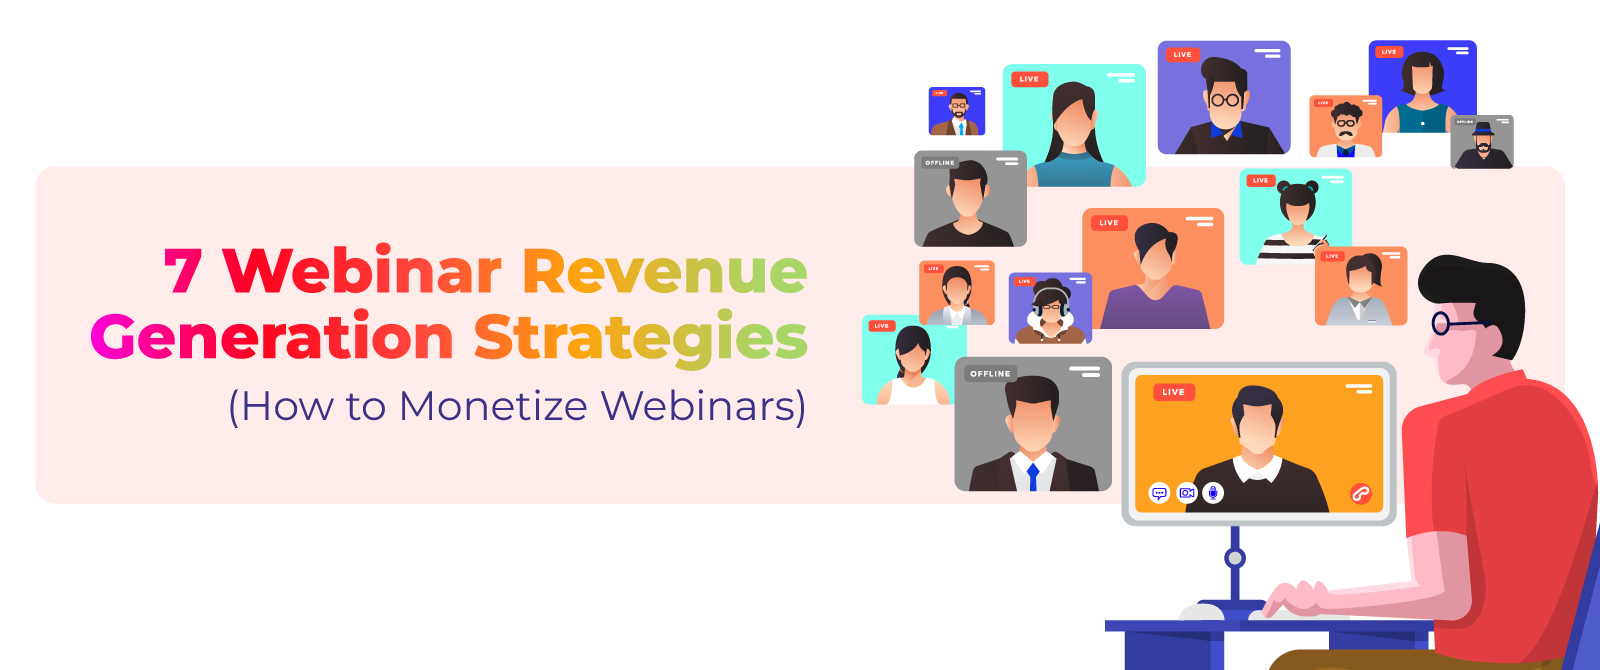 7 Webinar Revenue Generation Strategies (How to Monetize Webinars)